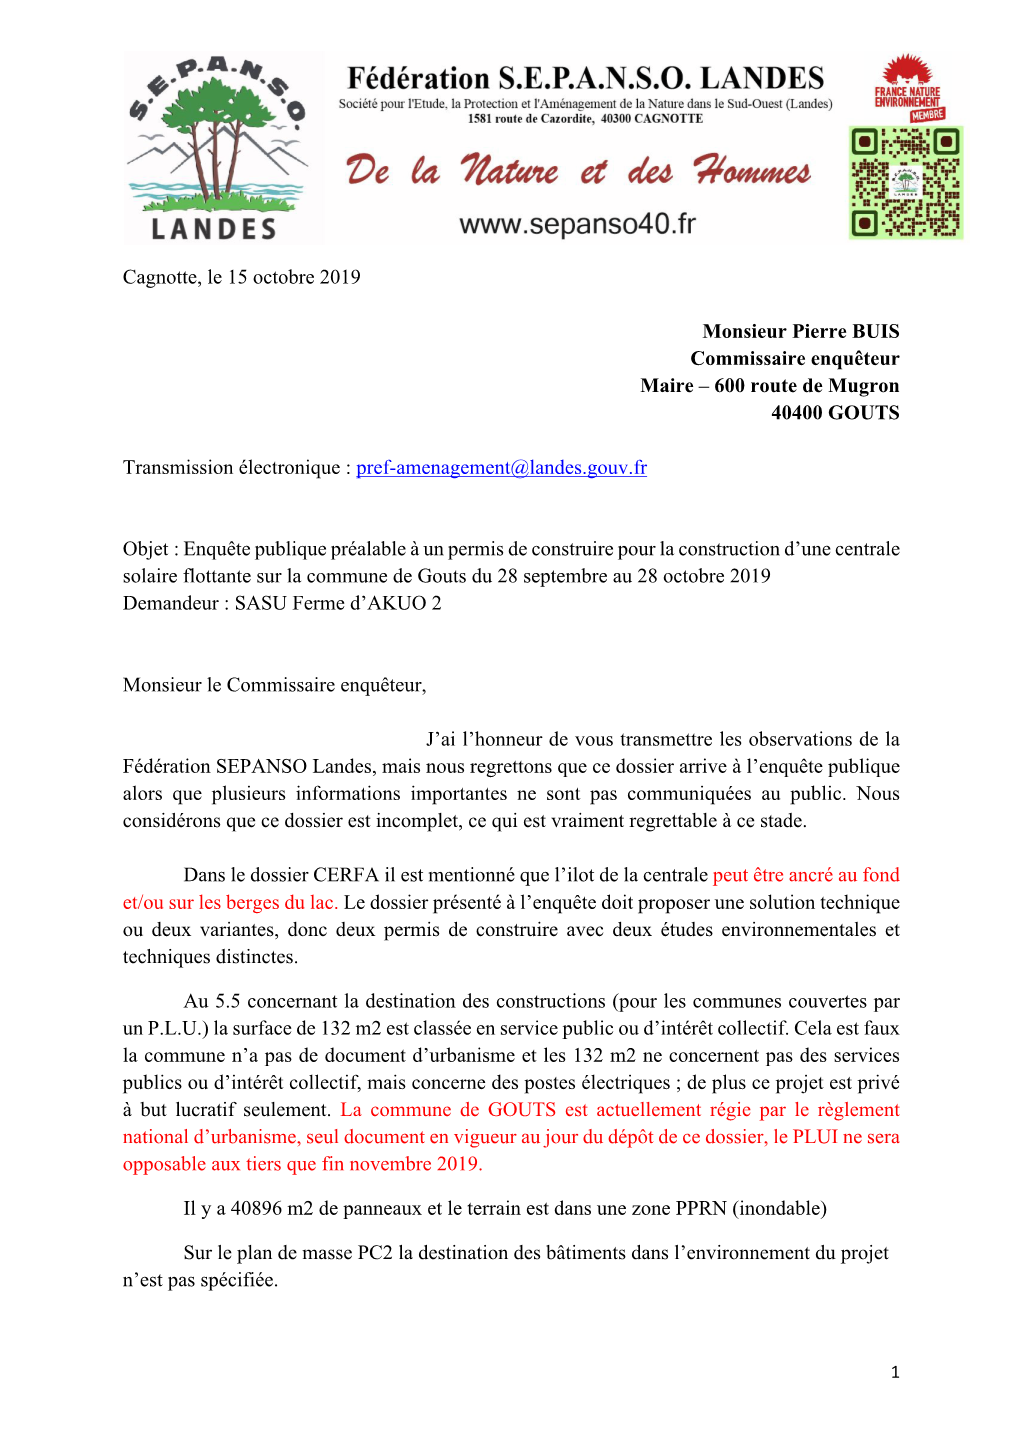 Cagnotte, Le 15 Octobre 2019 Monsieur Pierre BUIS Commissaire